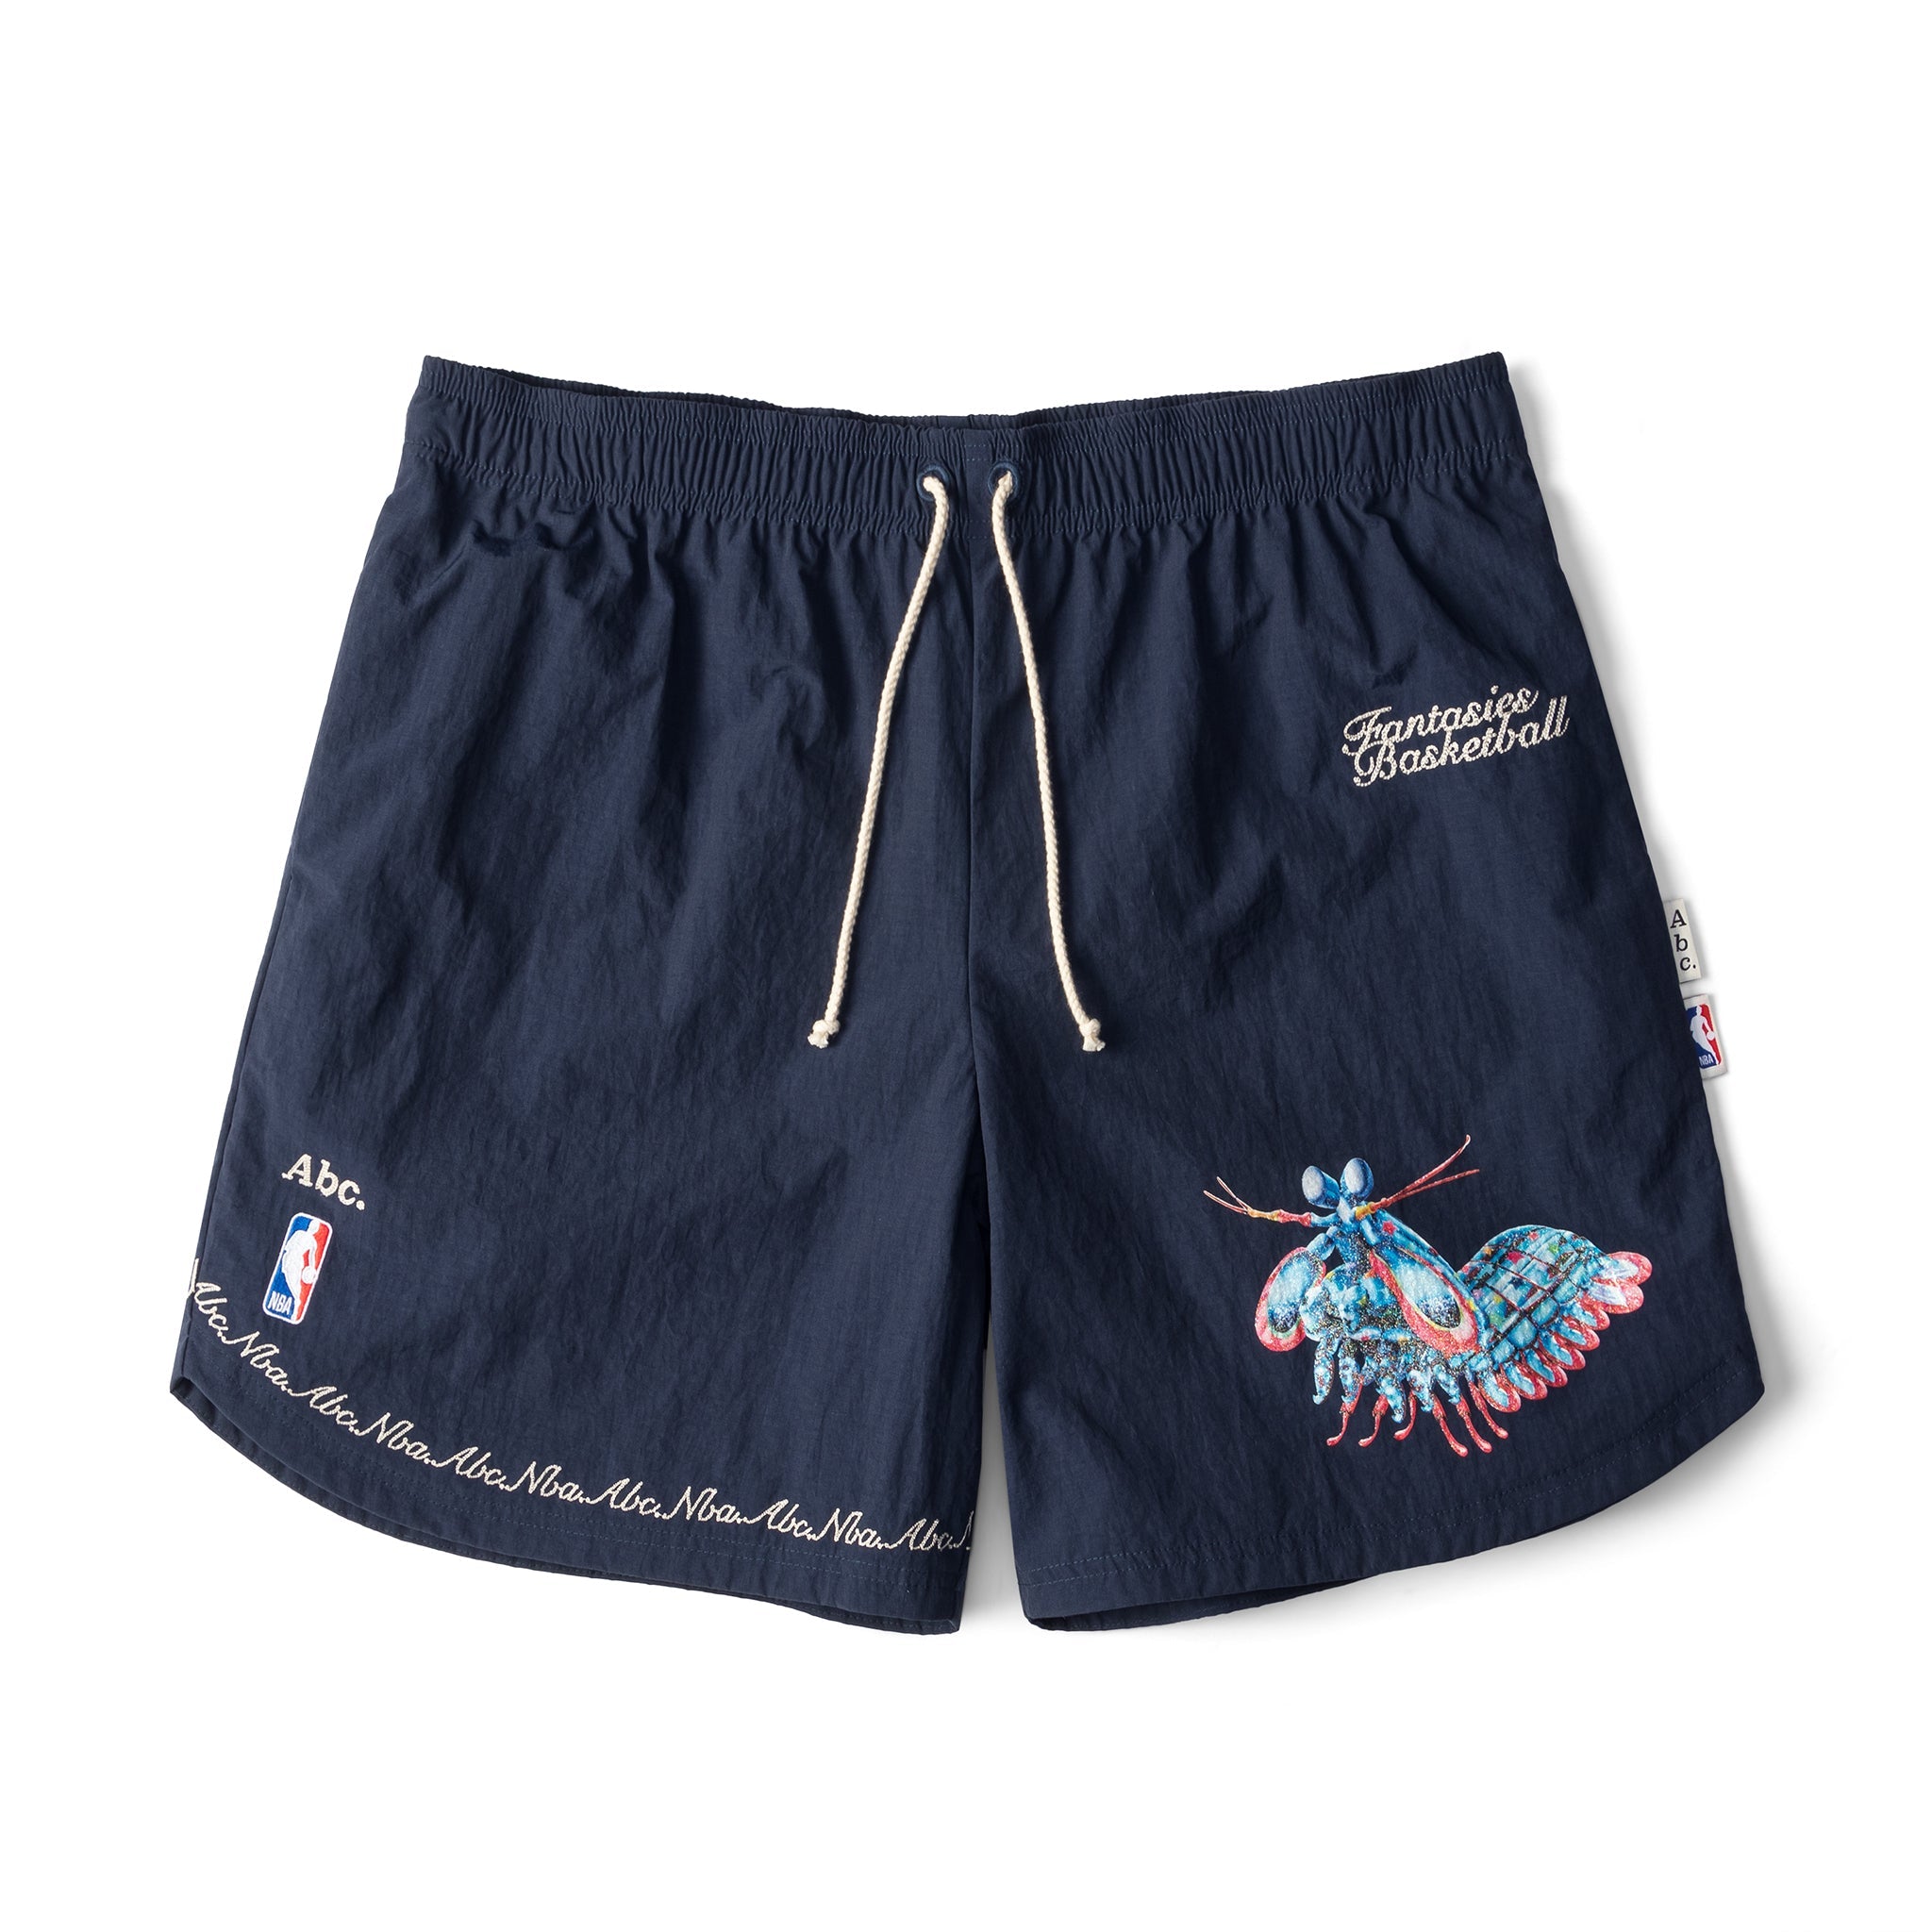 Abc. NBA Ripstop Taffeta Shorts (Navy)